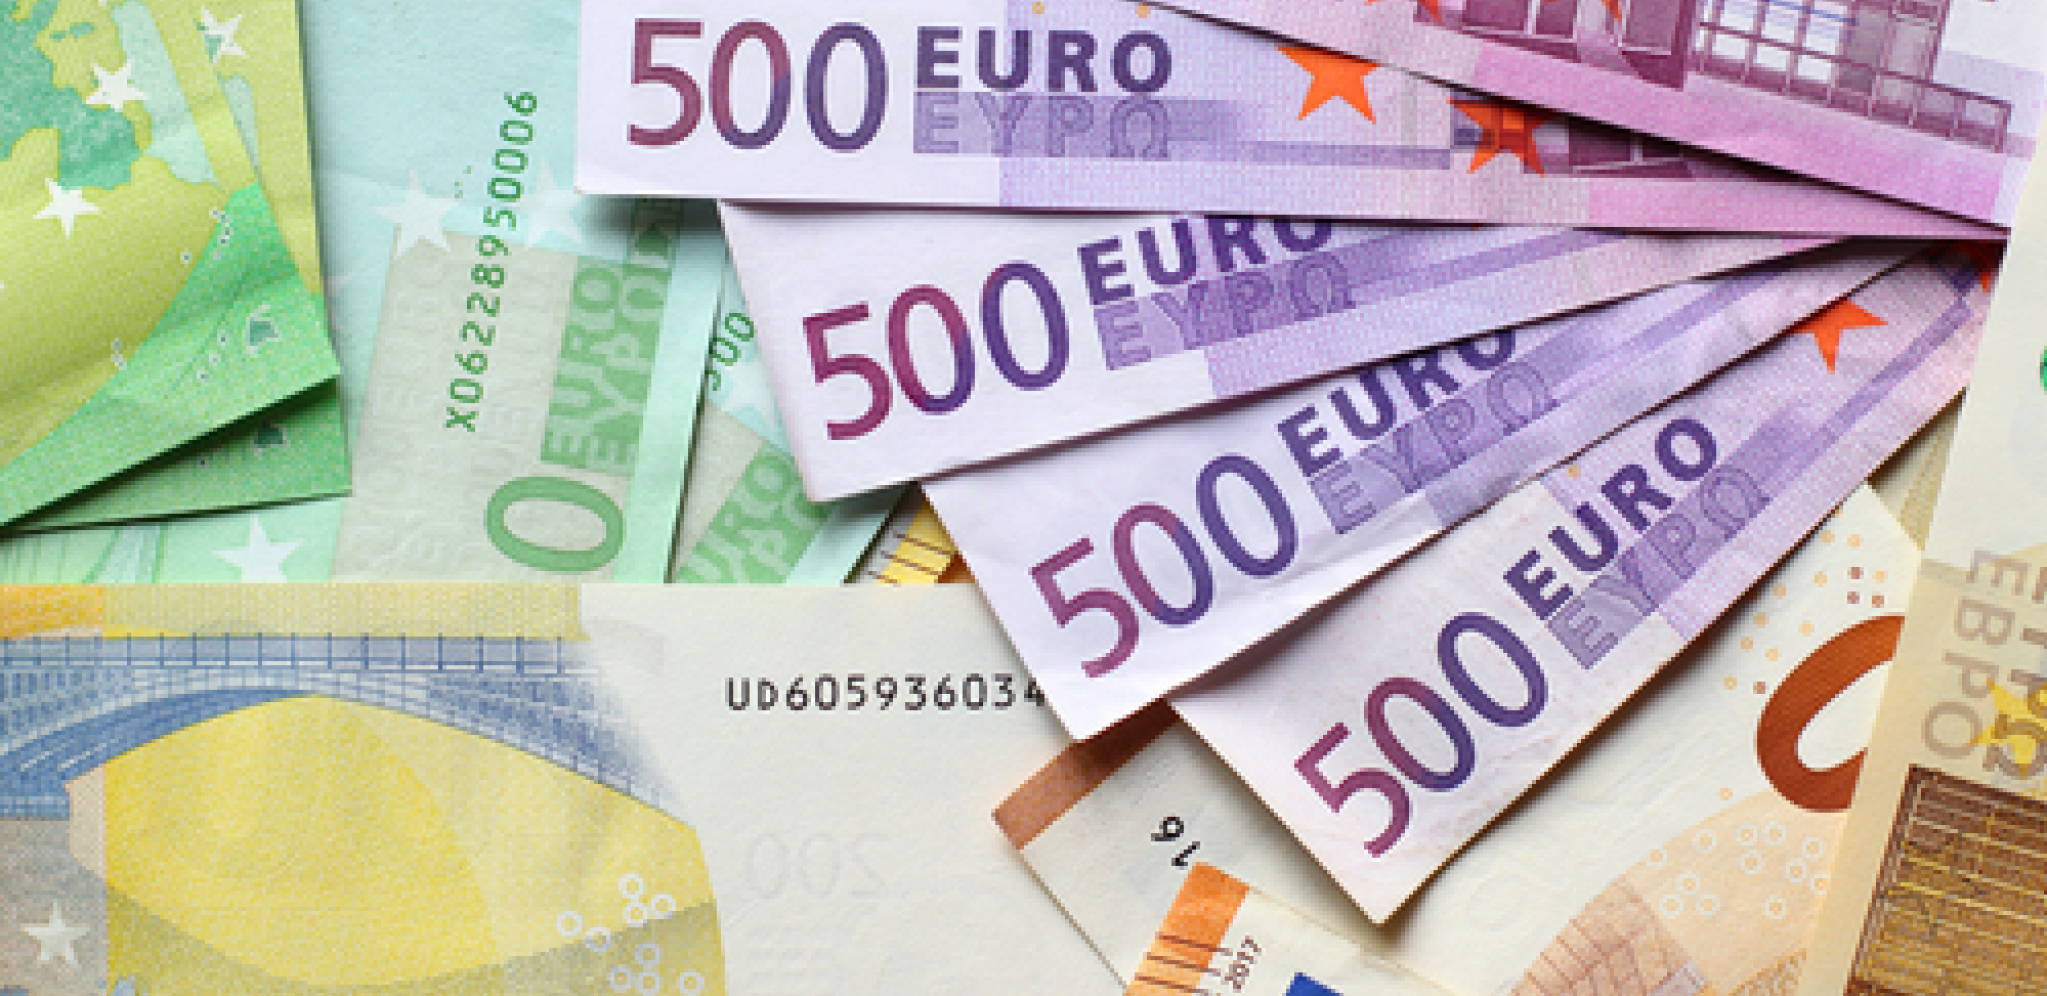 DA LI JE VREME ZA KUPOVINU DEVIZA? Objavljen novi kurs evra i dolara